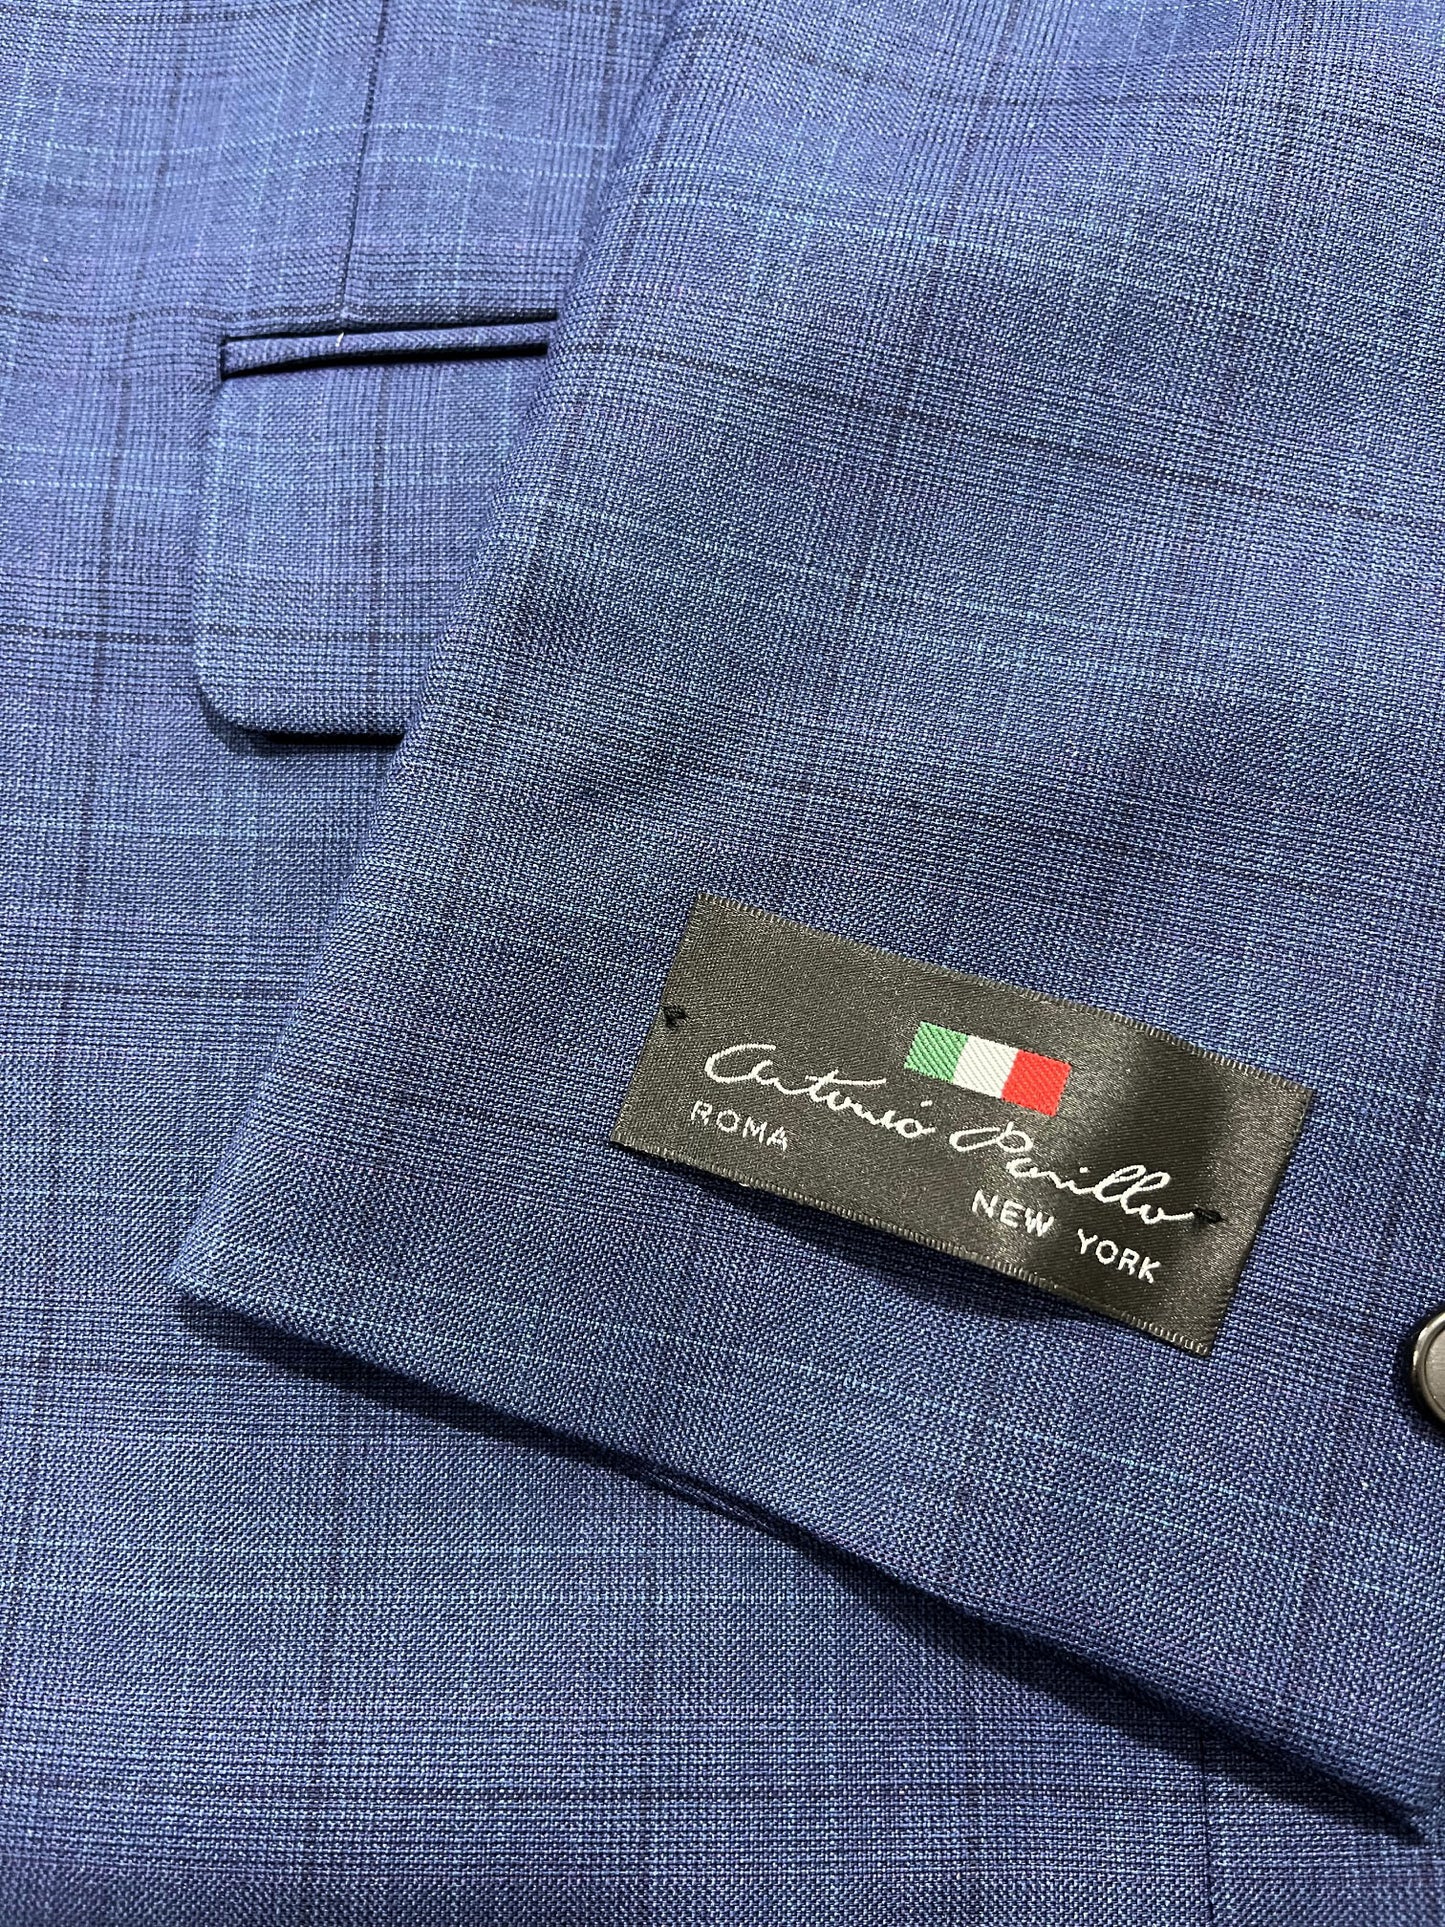 Antonio Parillo Suit Separate Coat Blue Plaid